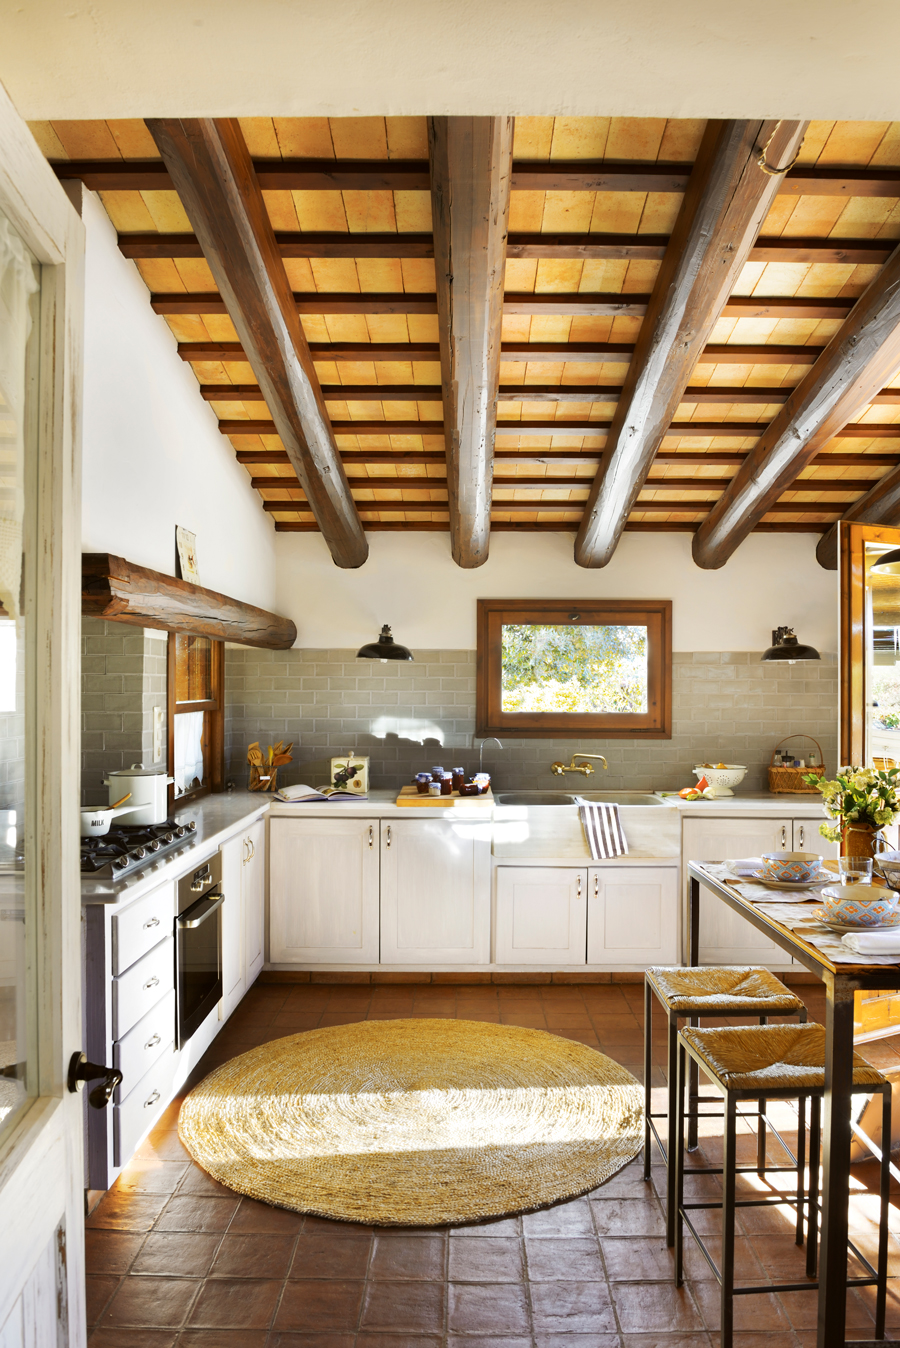 Cocina rústica con suelos de barro y techos con vigas de madera. 